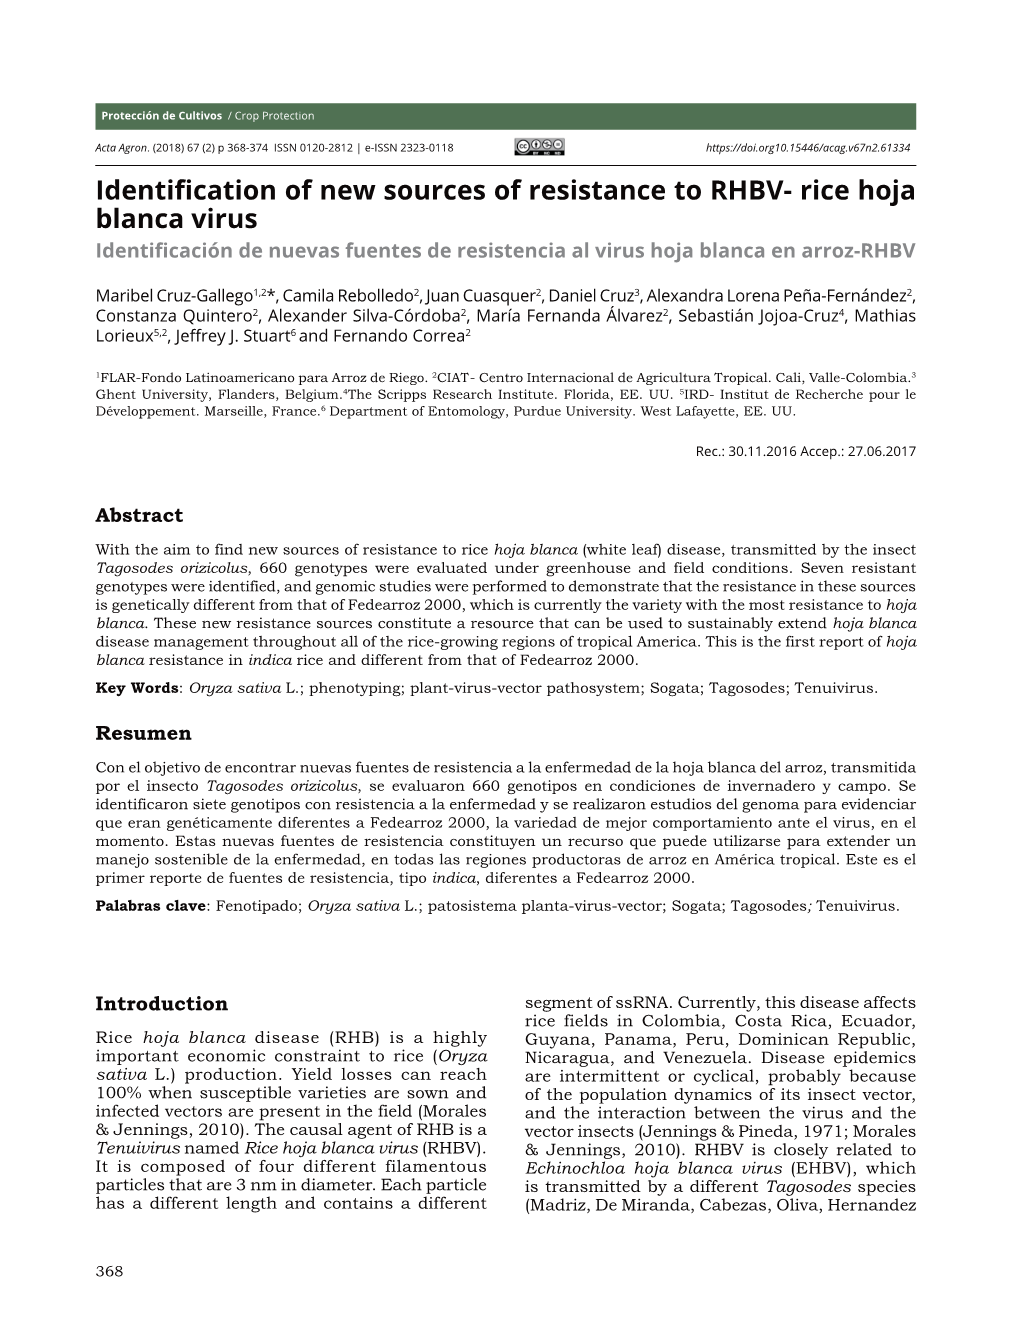 Identification of New Sources of Resistance to RHBV- Rice Hoja Blanca Virus Identificación De Nuevas Fuentes De Resistencia Al Virus Hoja Blanca En Arroz-RHBV